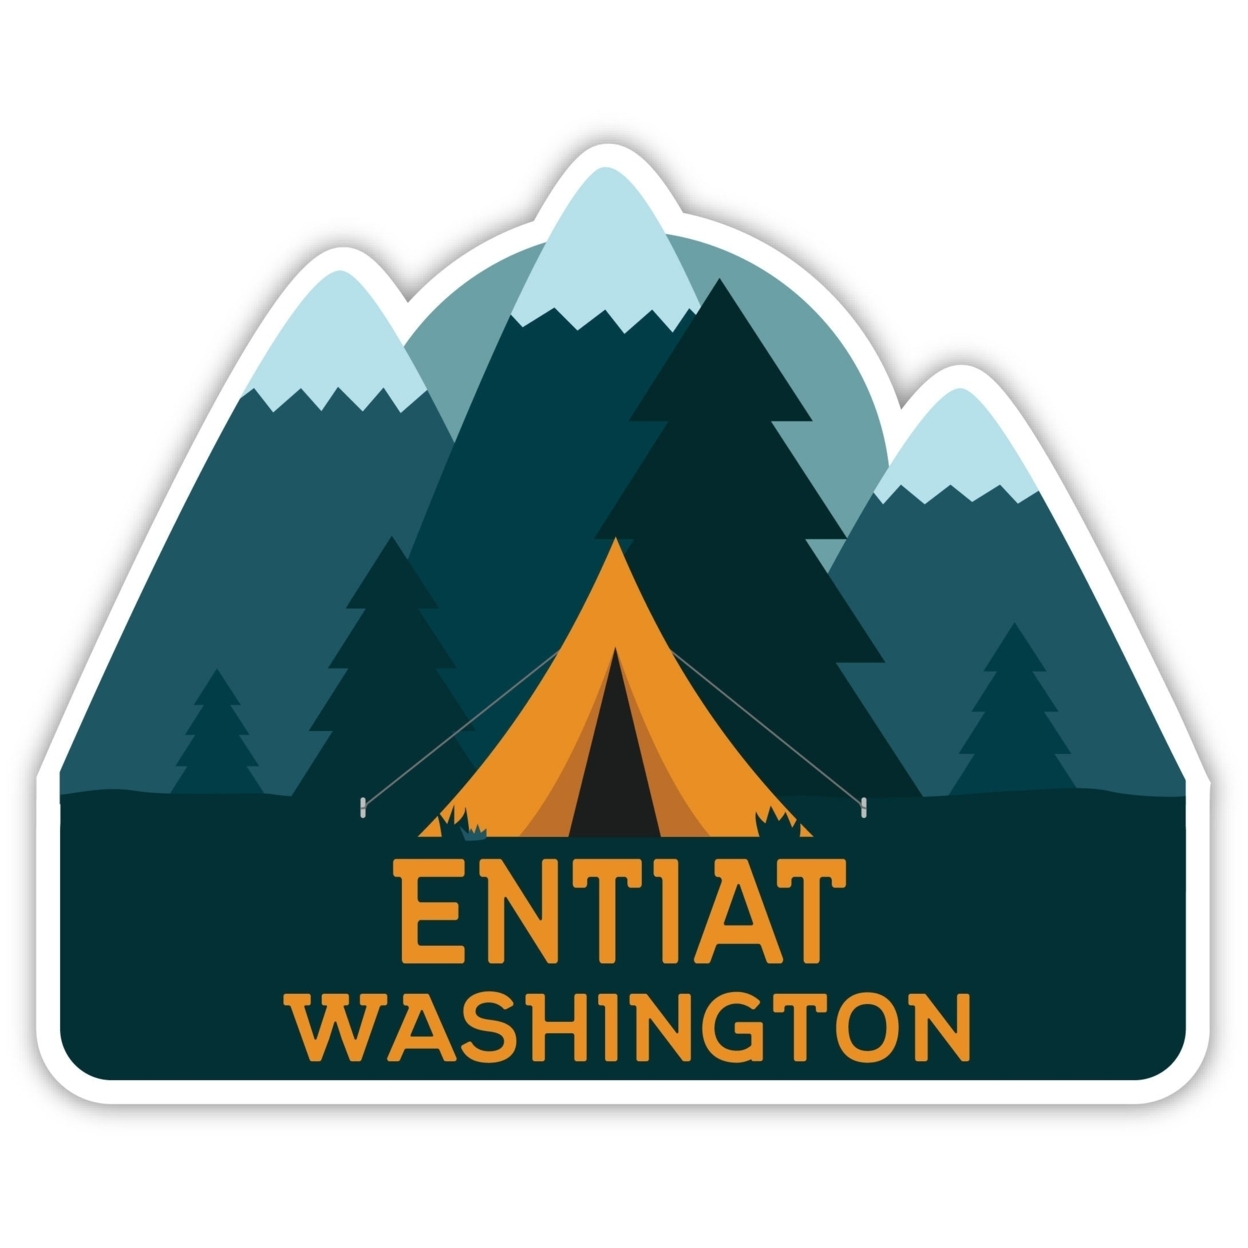 Entiat Washington Souvenir Decorative Stickers (Choose Theme And Size) - Single Unit, 10-Inch, Tent